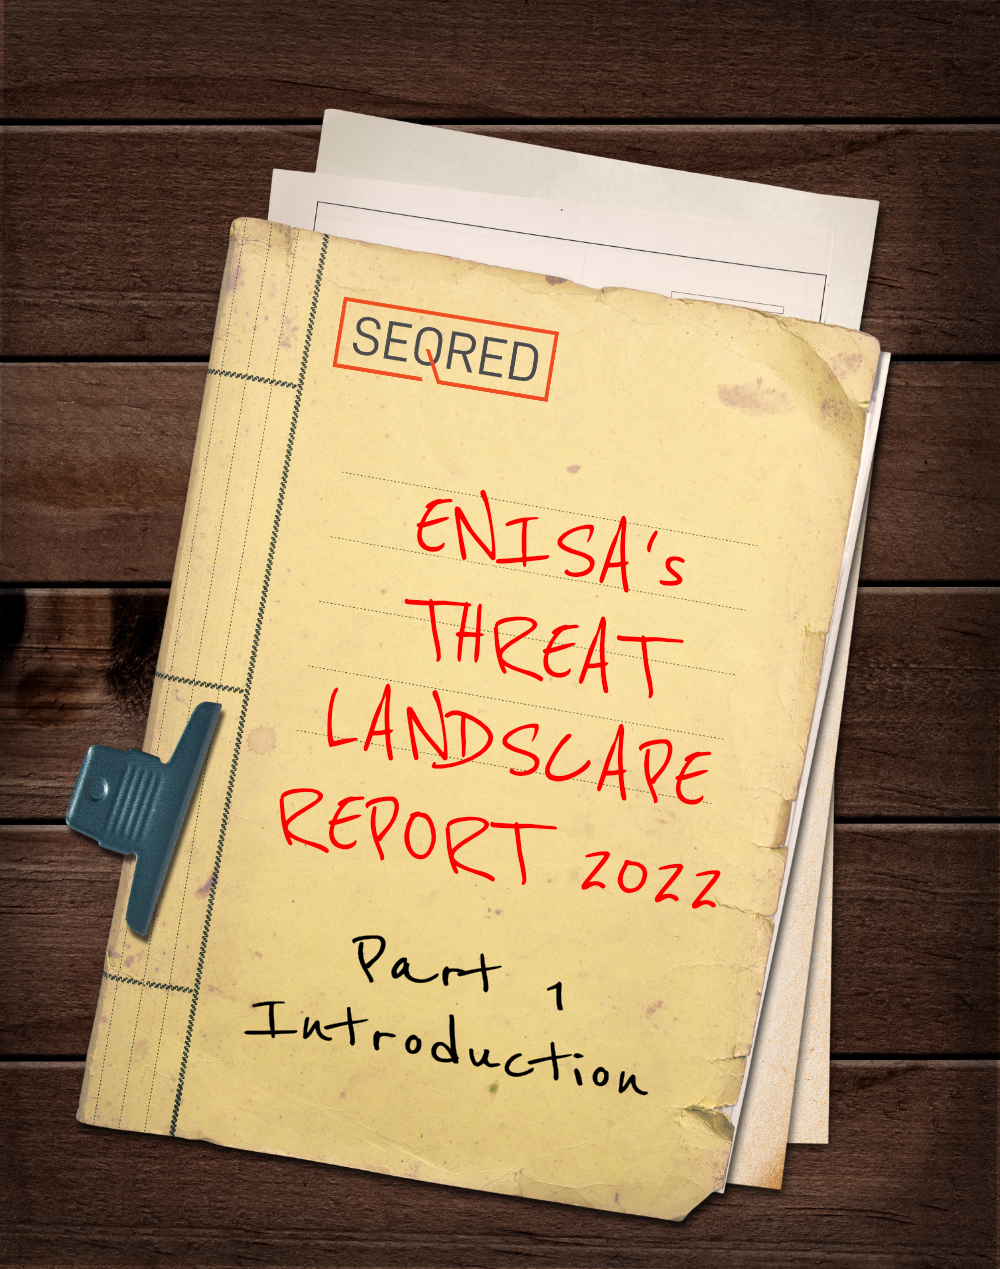 ENISA's Threat Landscape Report 20220 - Part 1 - Introduction